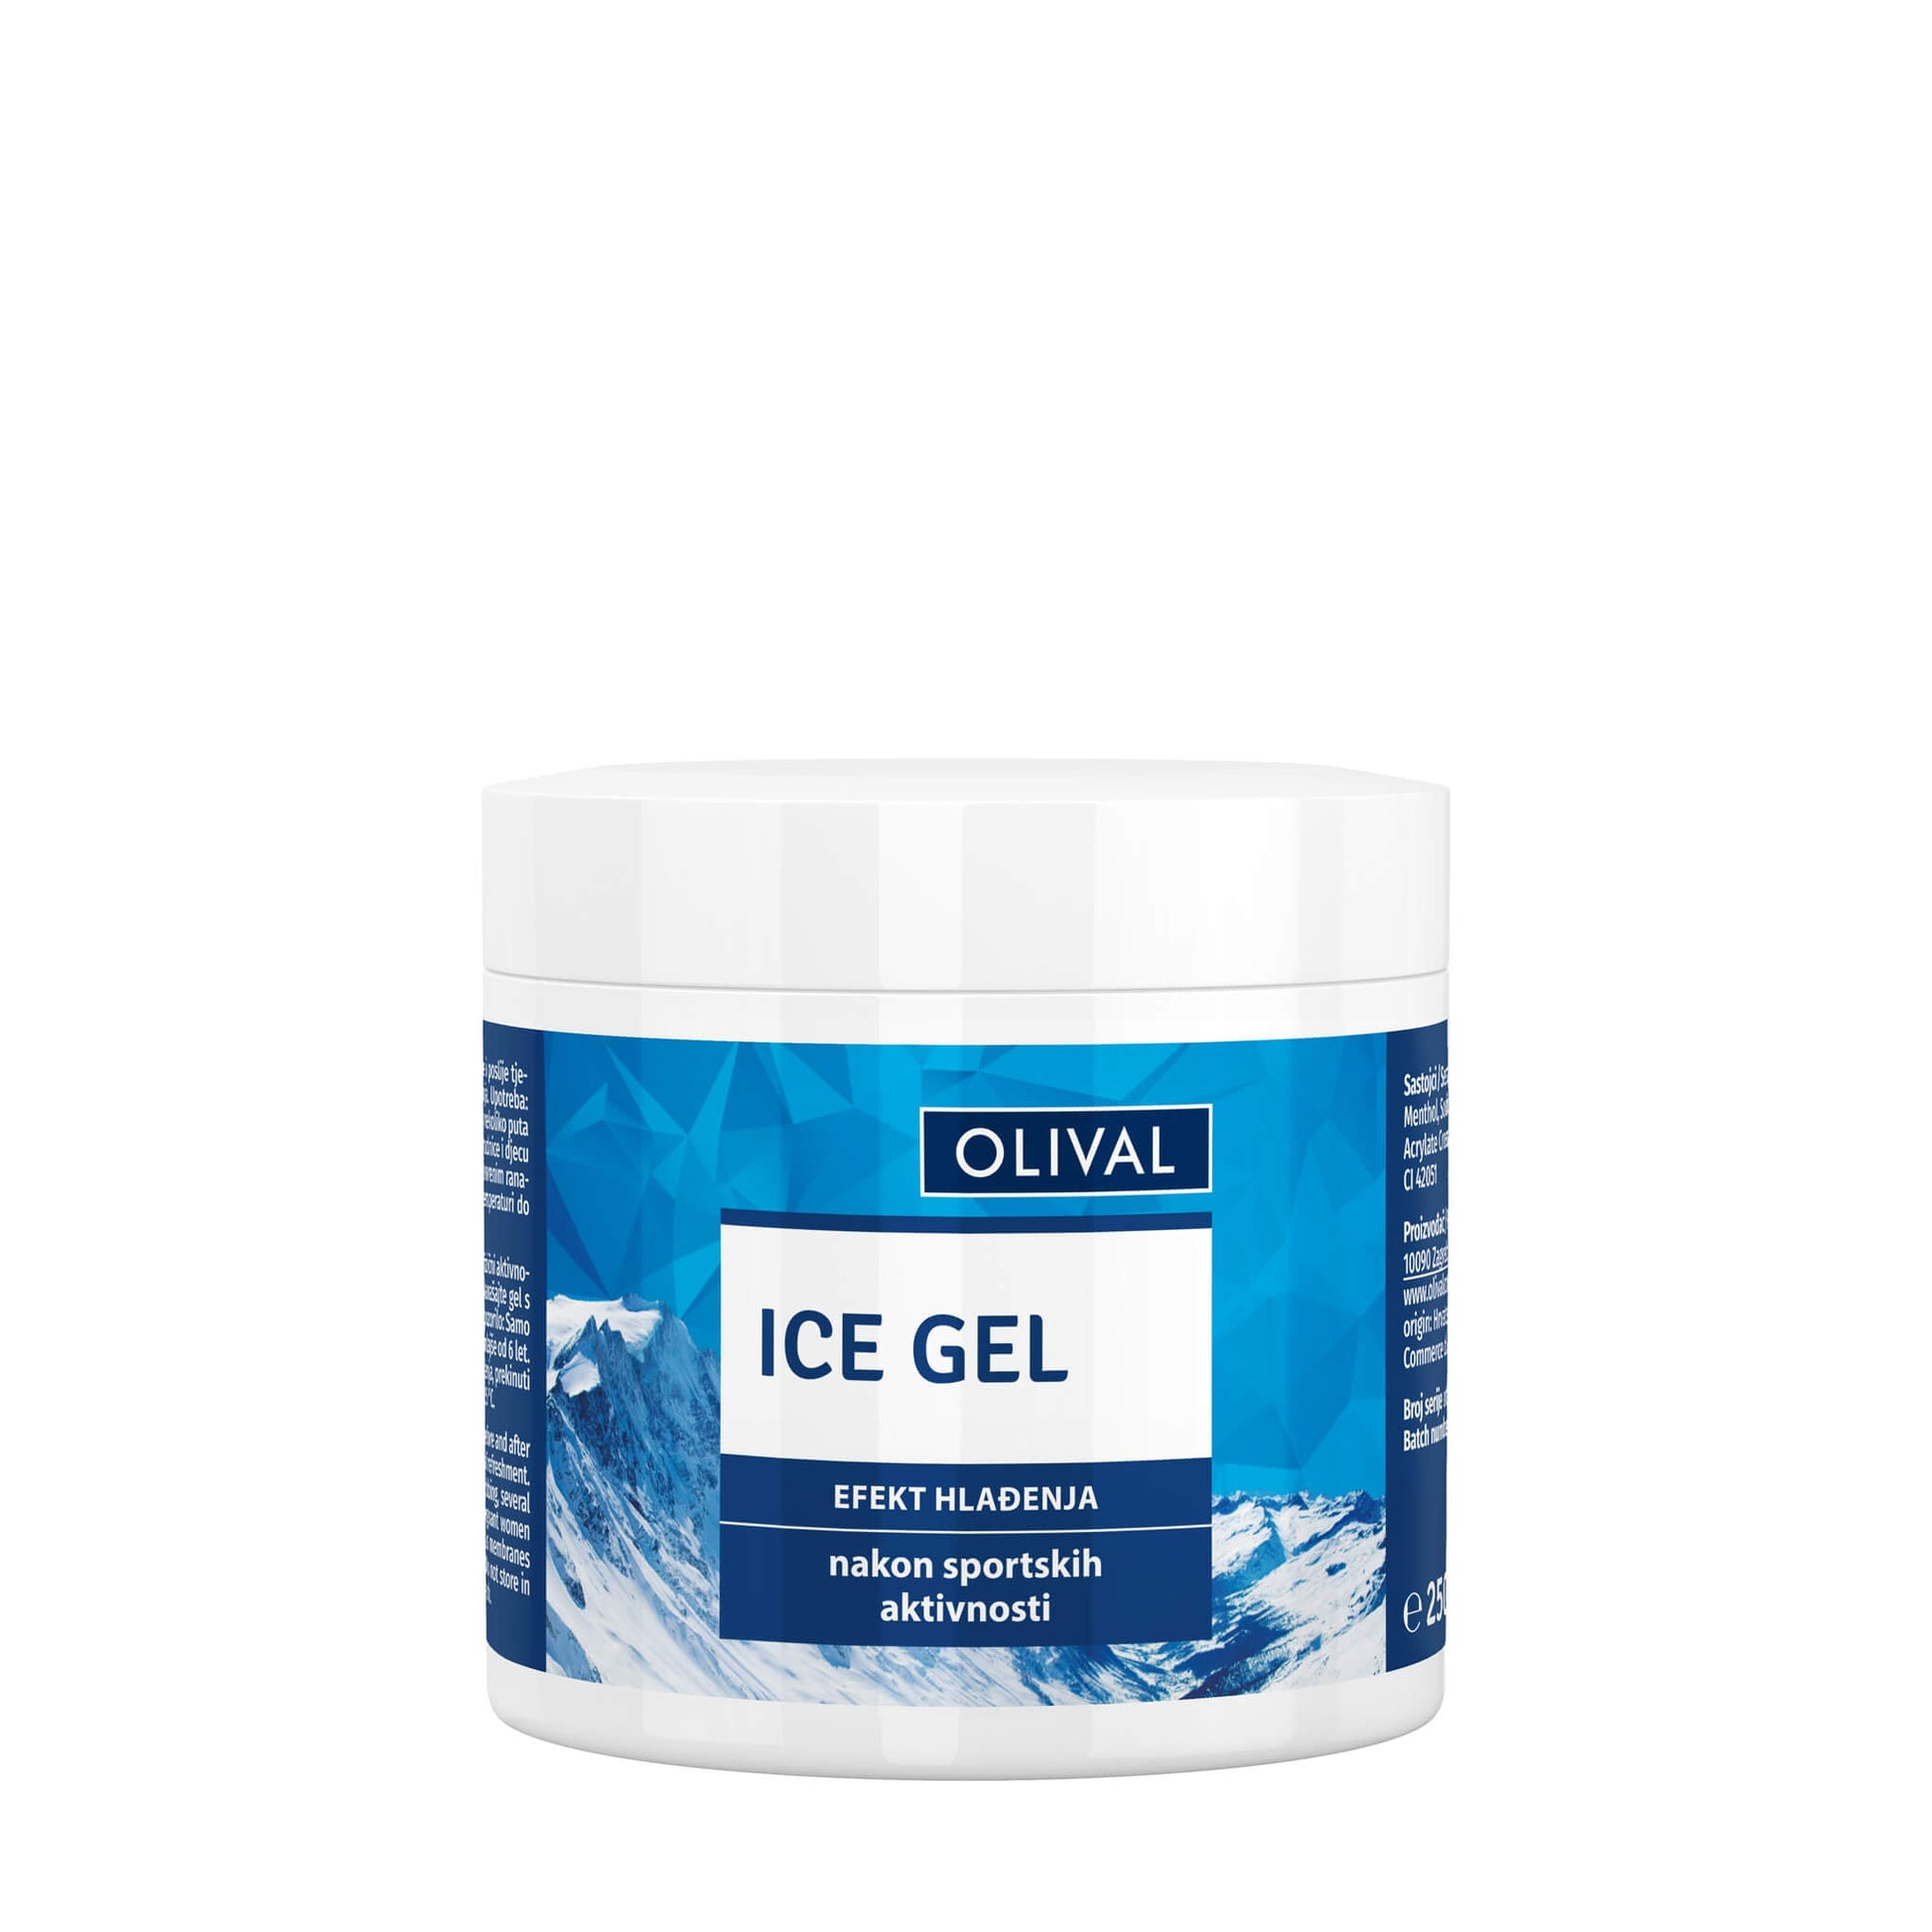 Ice gel